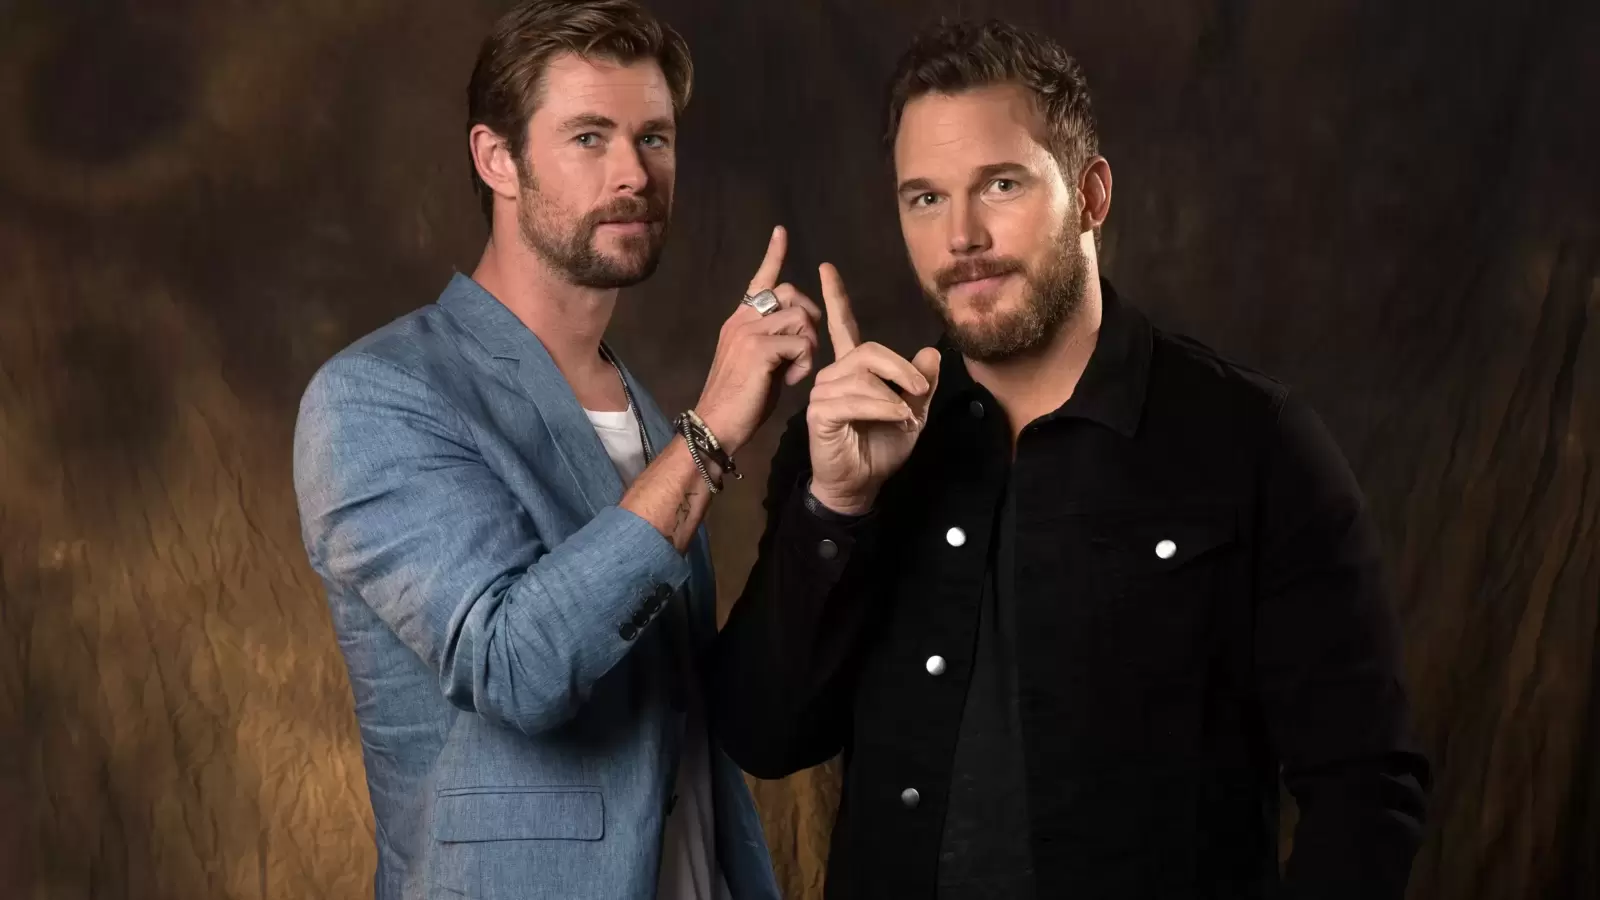 When Chris Pratt left Thor Love and Thunder co-star Chris Hemsworth starstruck: ‘I was weirdly shaken’